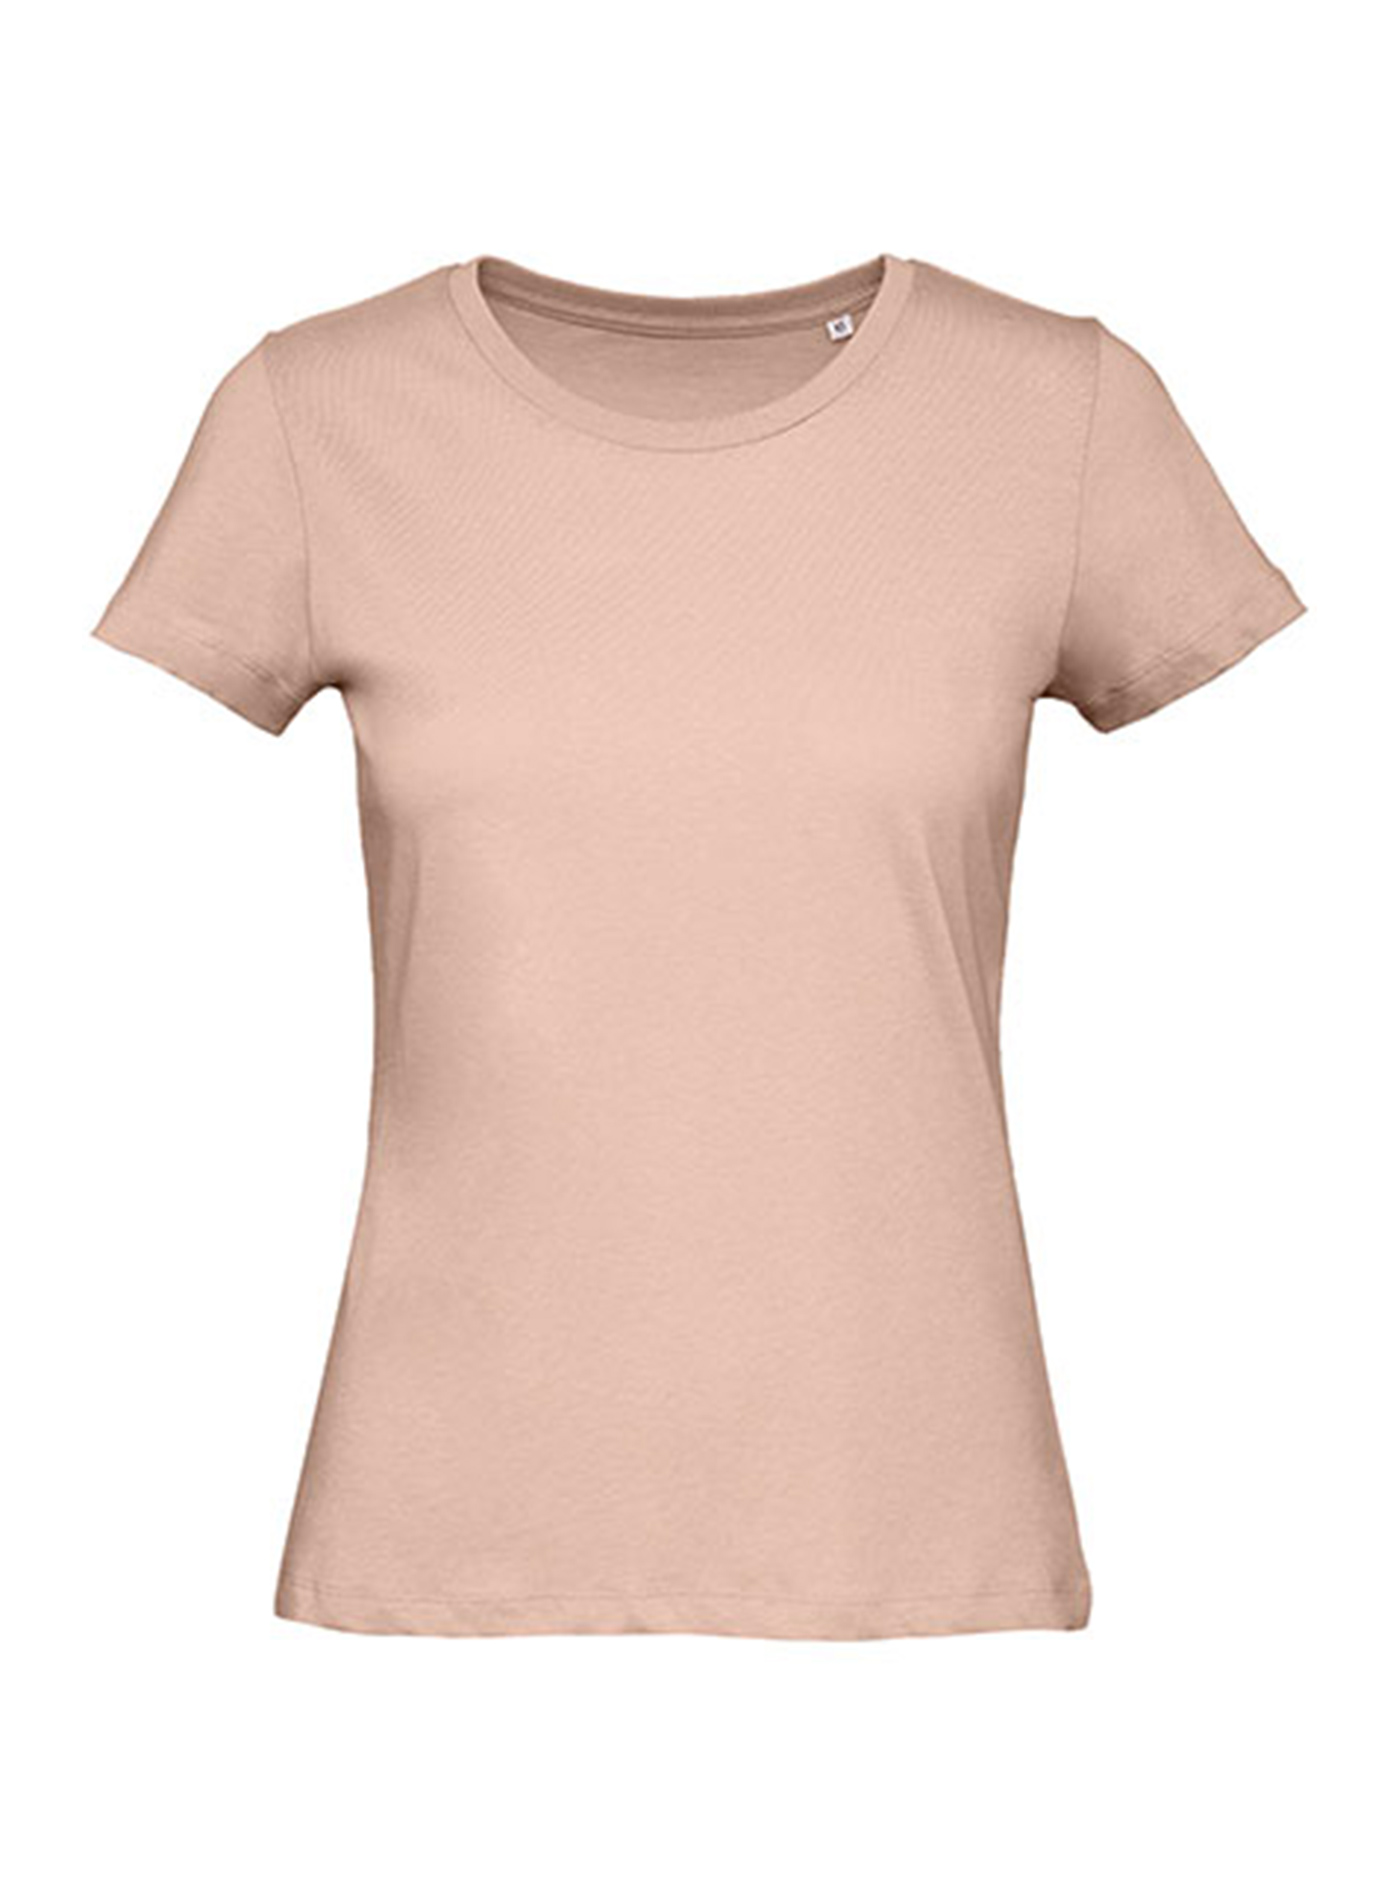 Dámské tričko B&C Collection Inspire - Bledě růžová XL